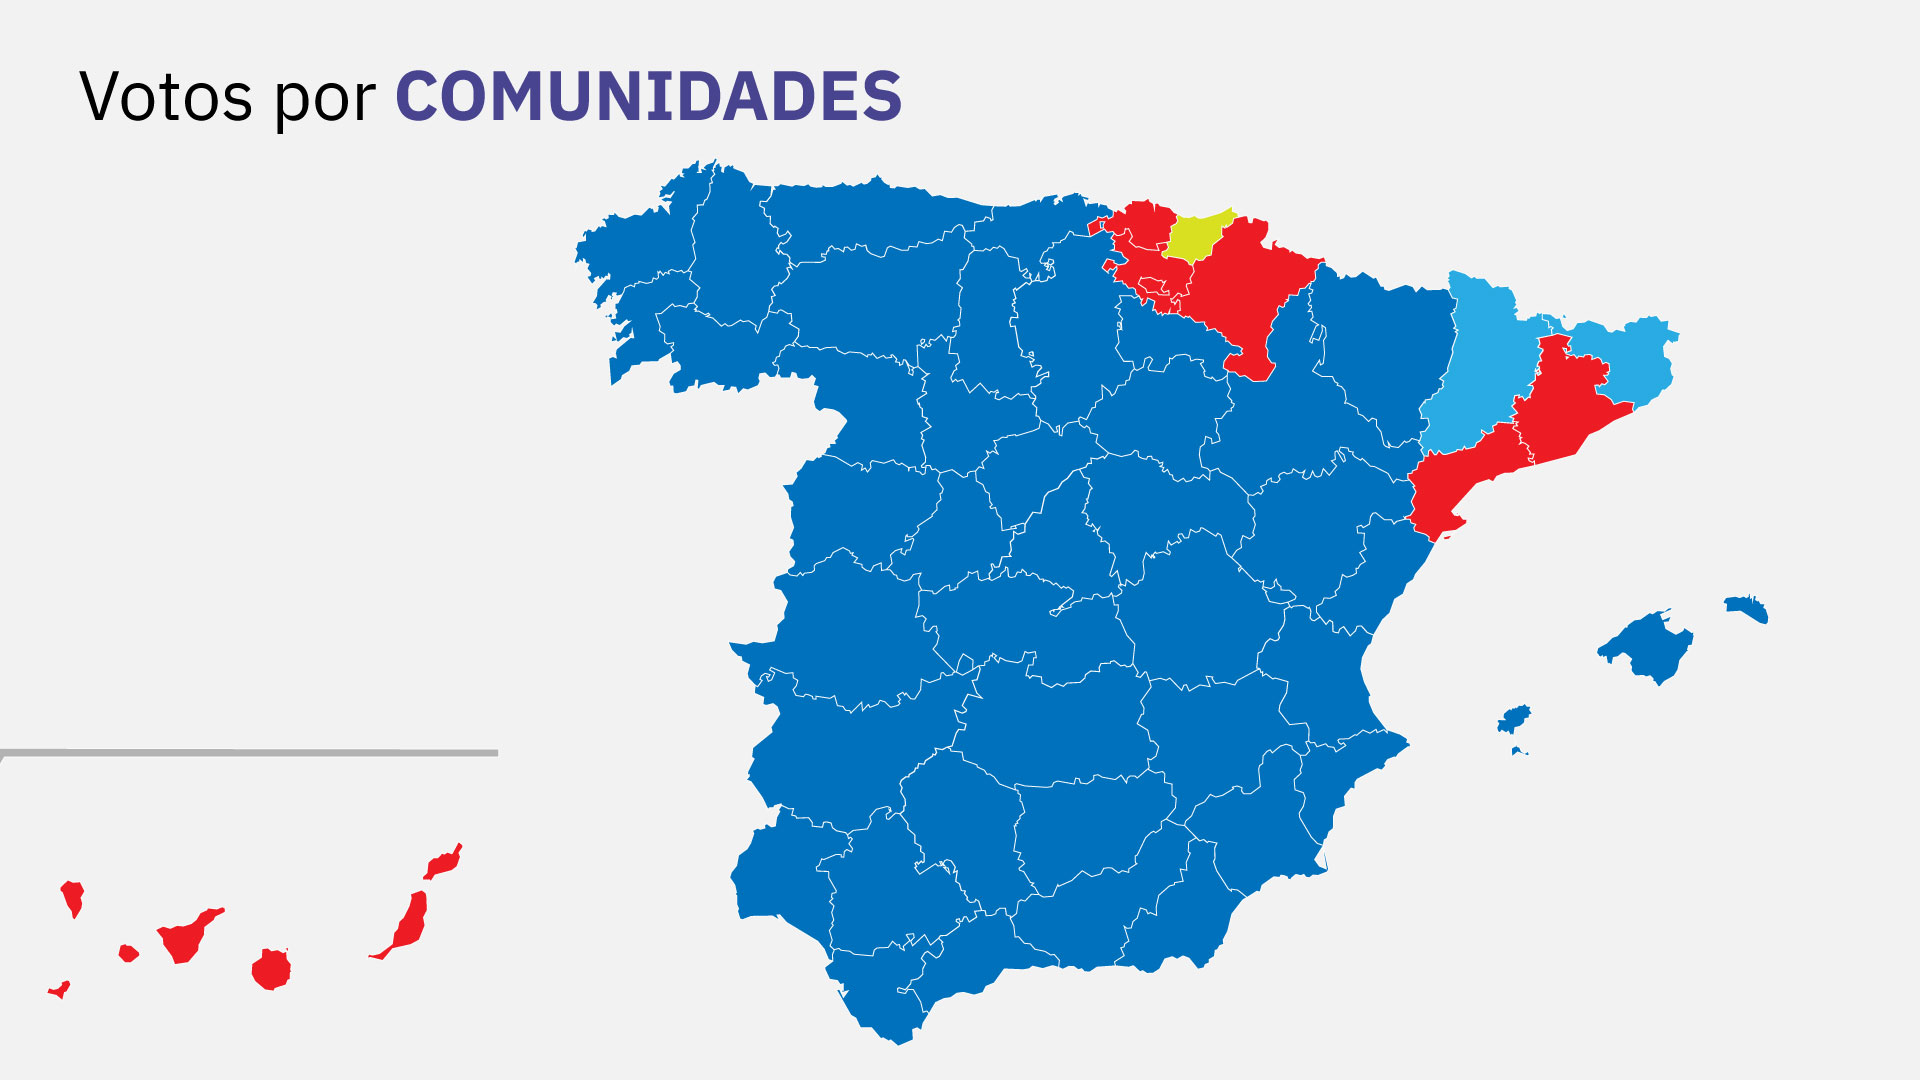 El PP logró victorias en la mayoría de los territorios con la excepción de Cataluña y País Vasco